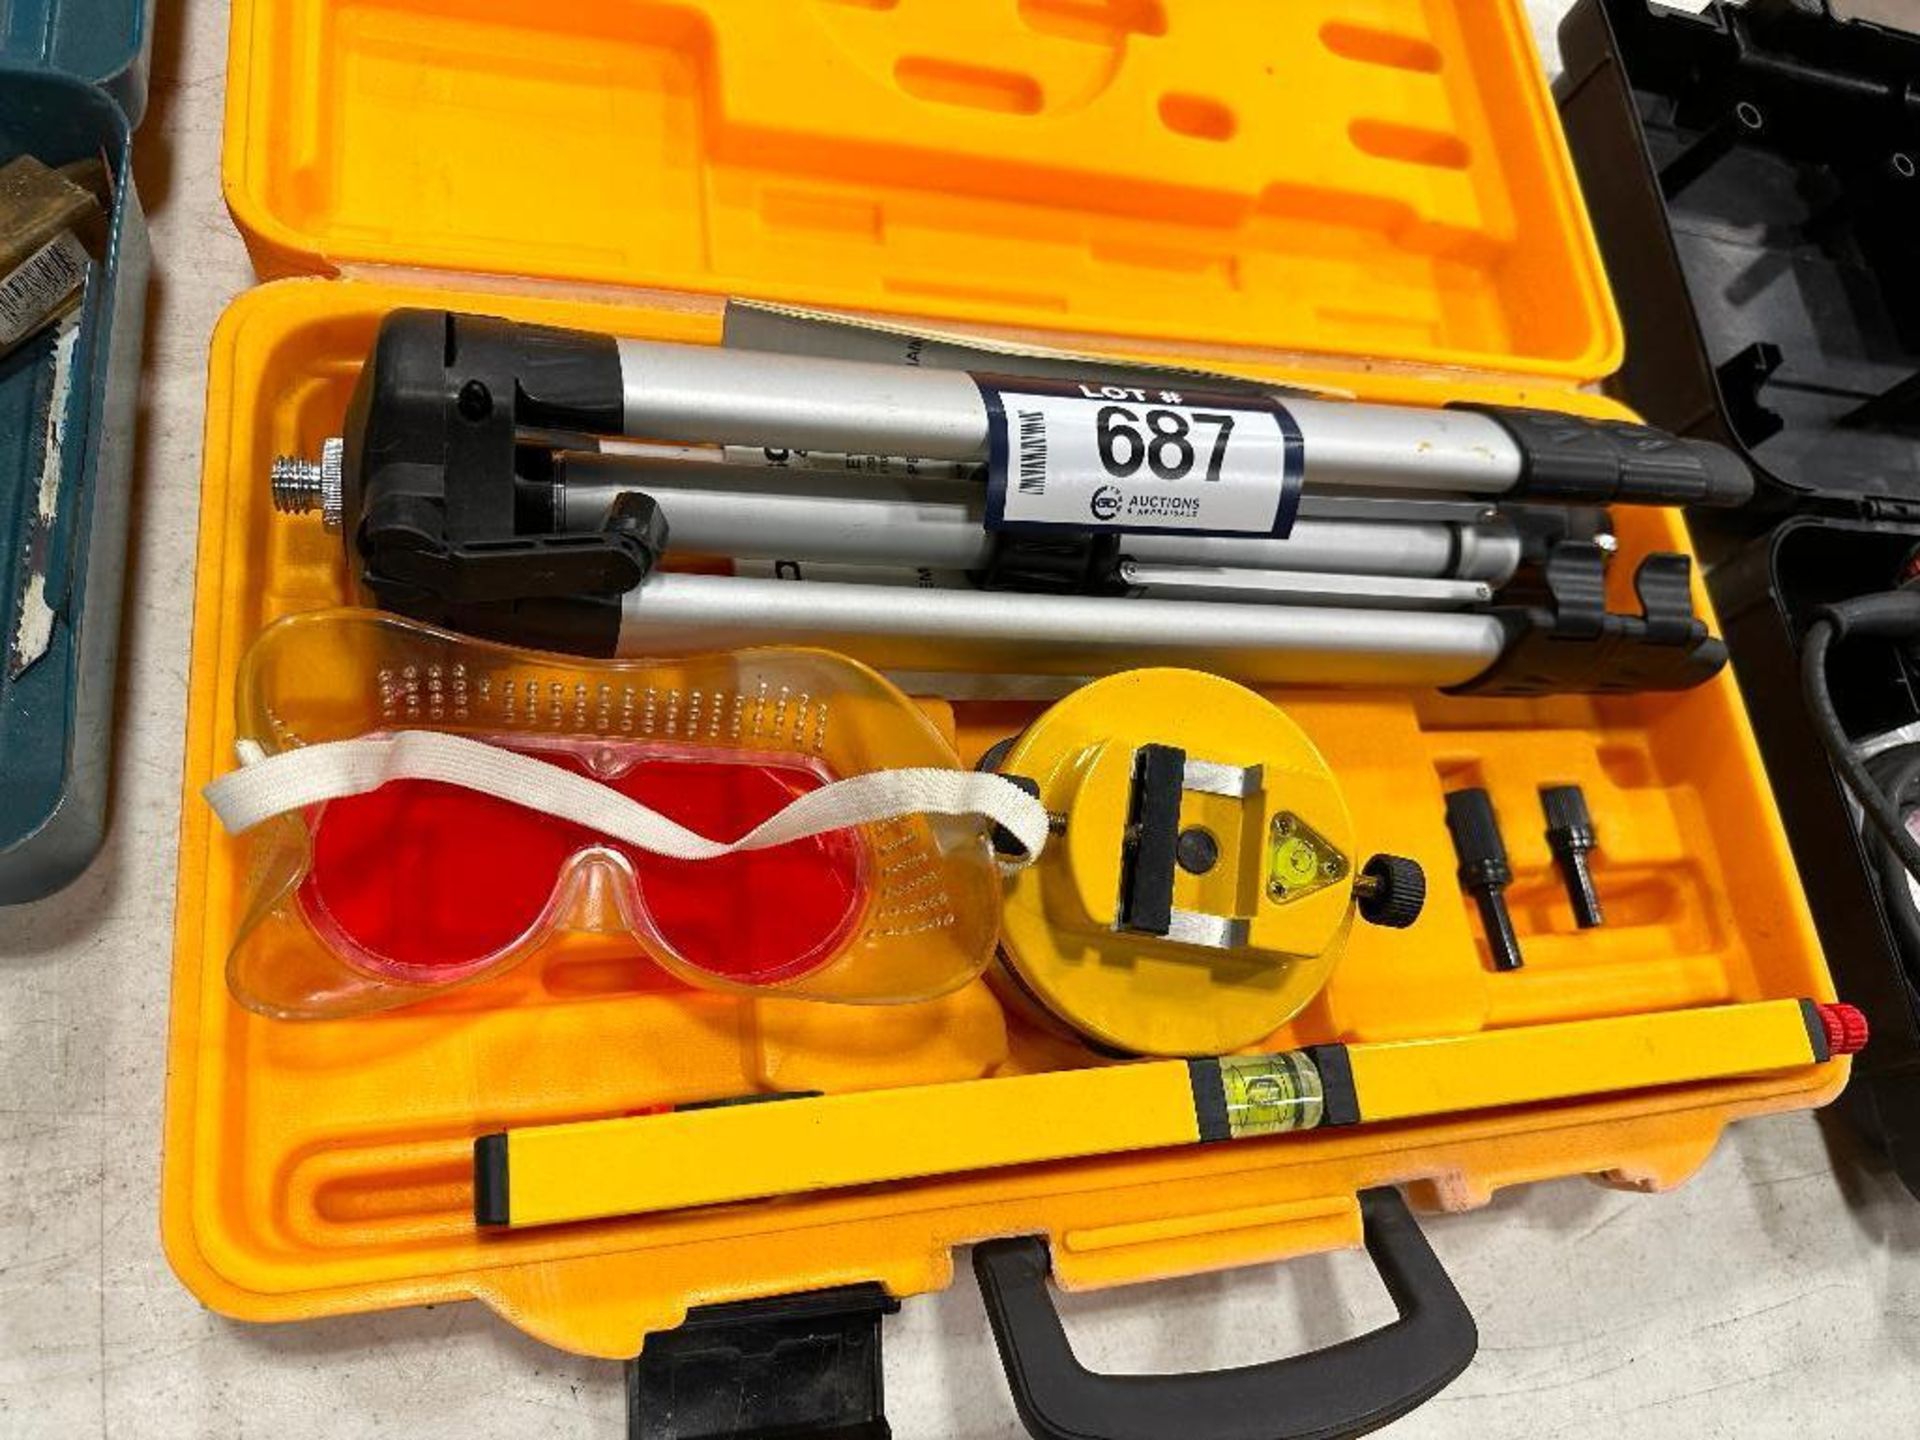 Johnson Laser Level Kit 40-0909 - Image 3 of 3